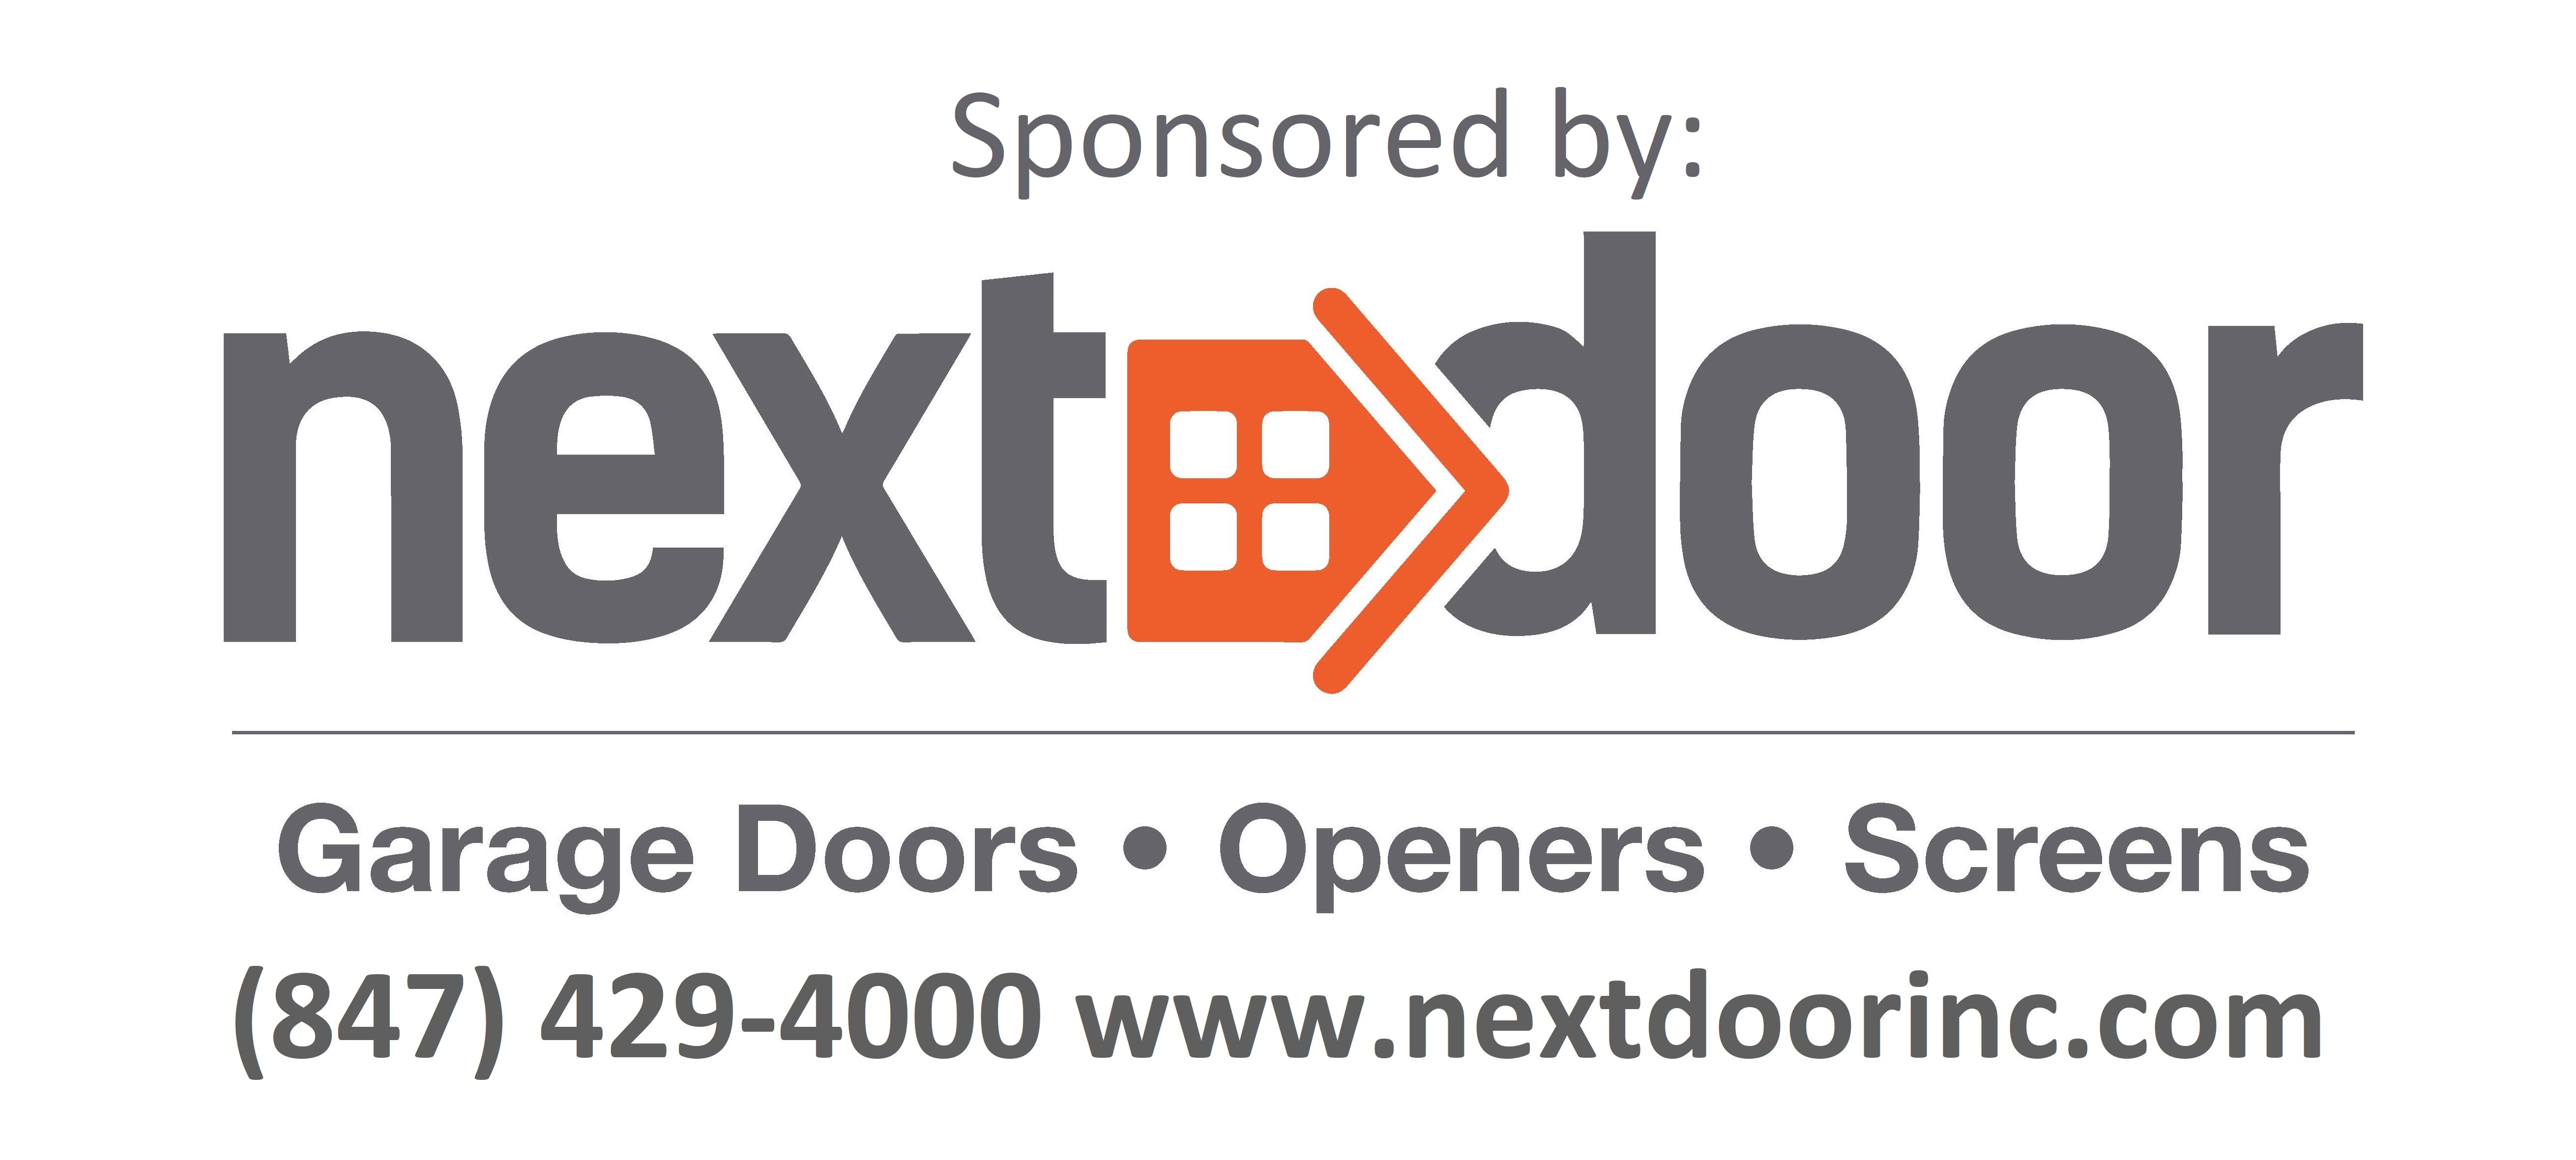 Next Door Logo w Text and Contact